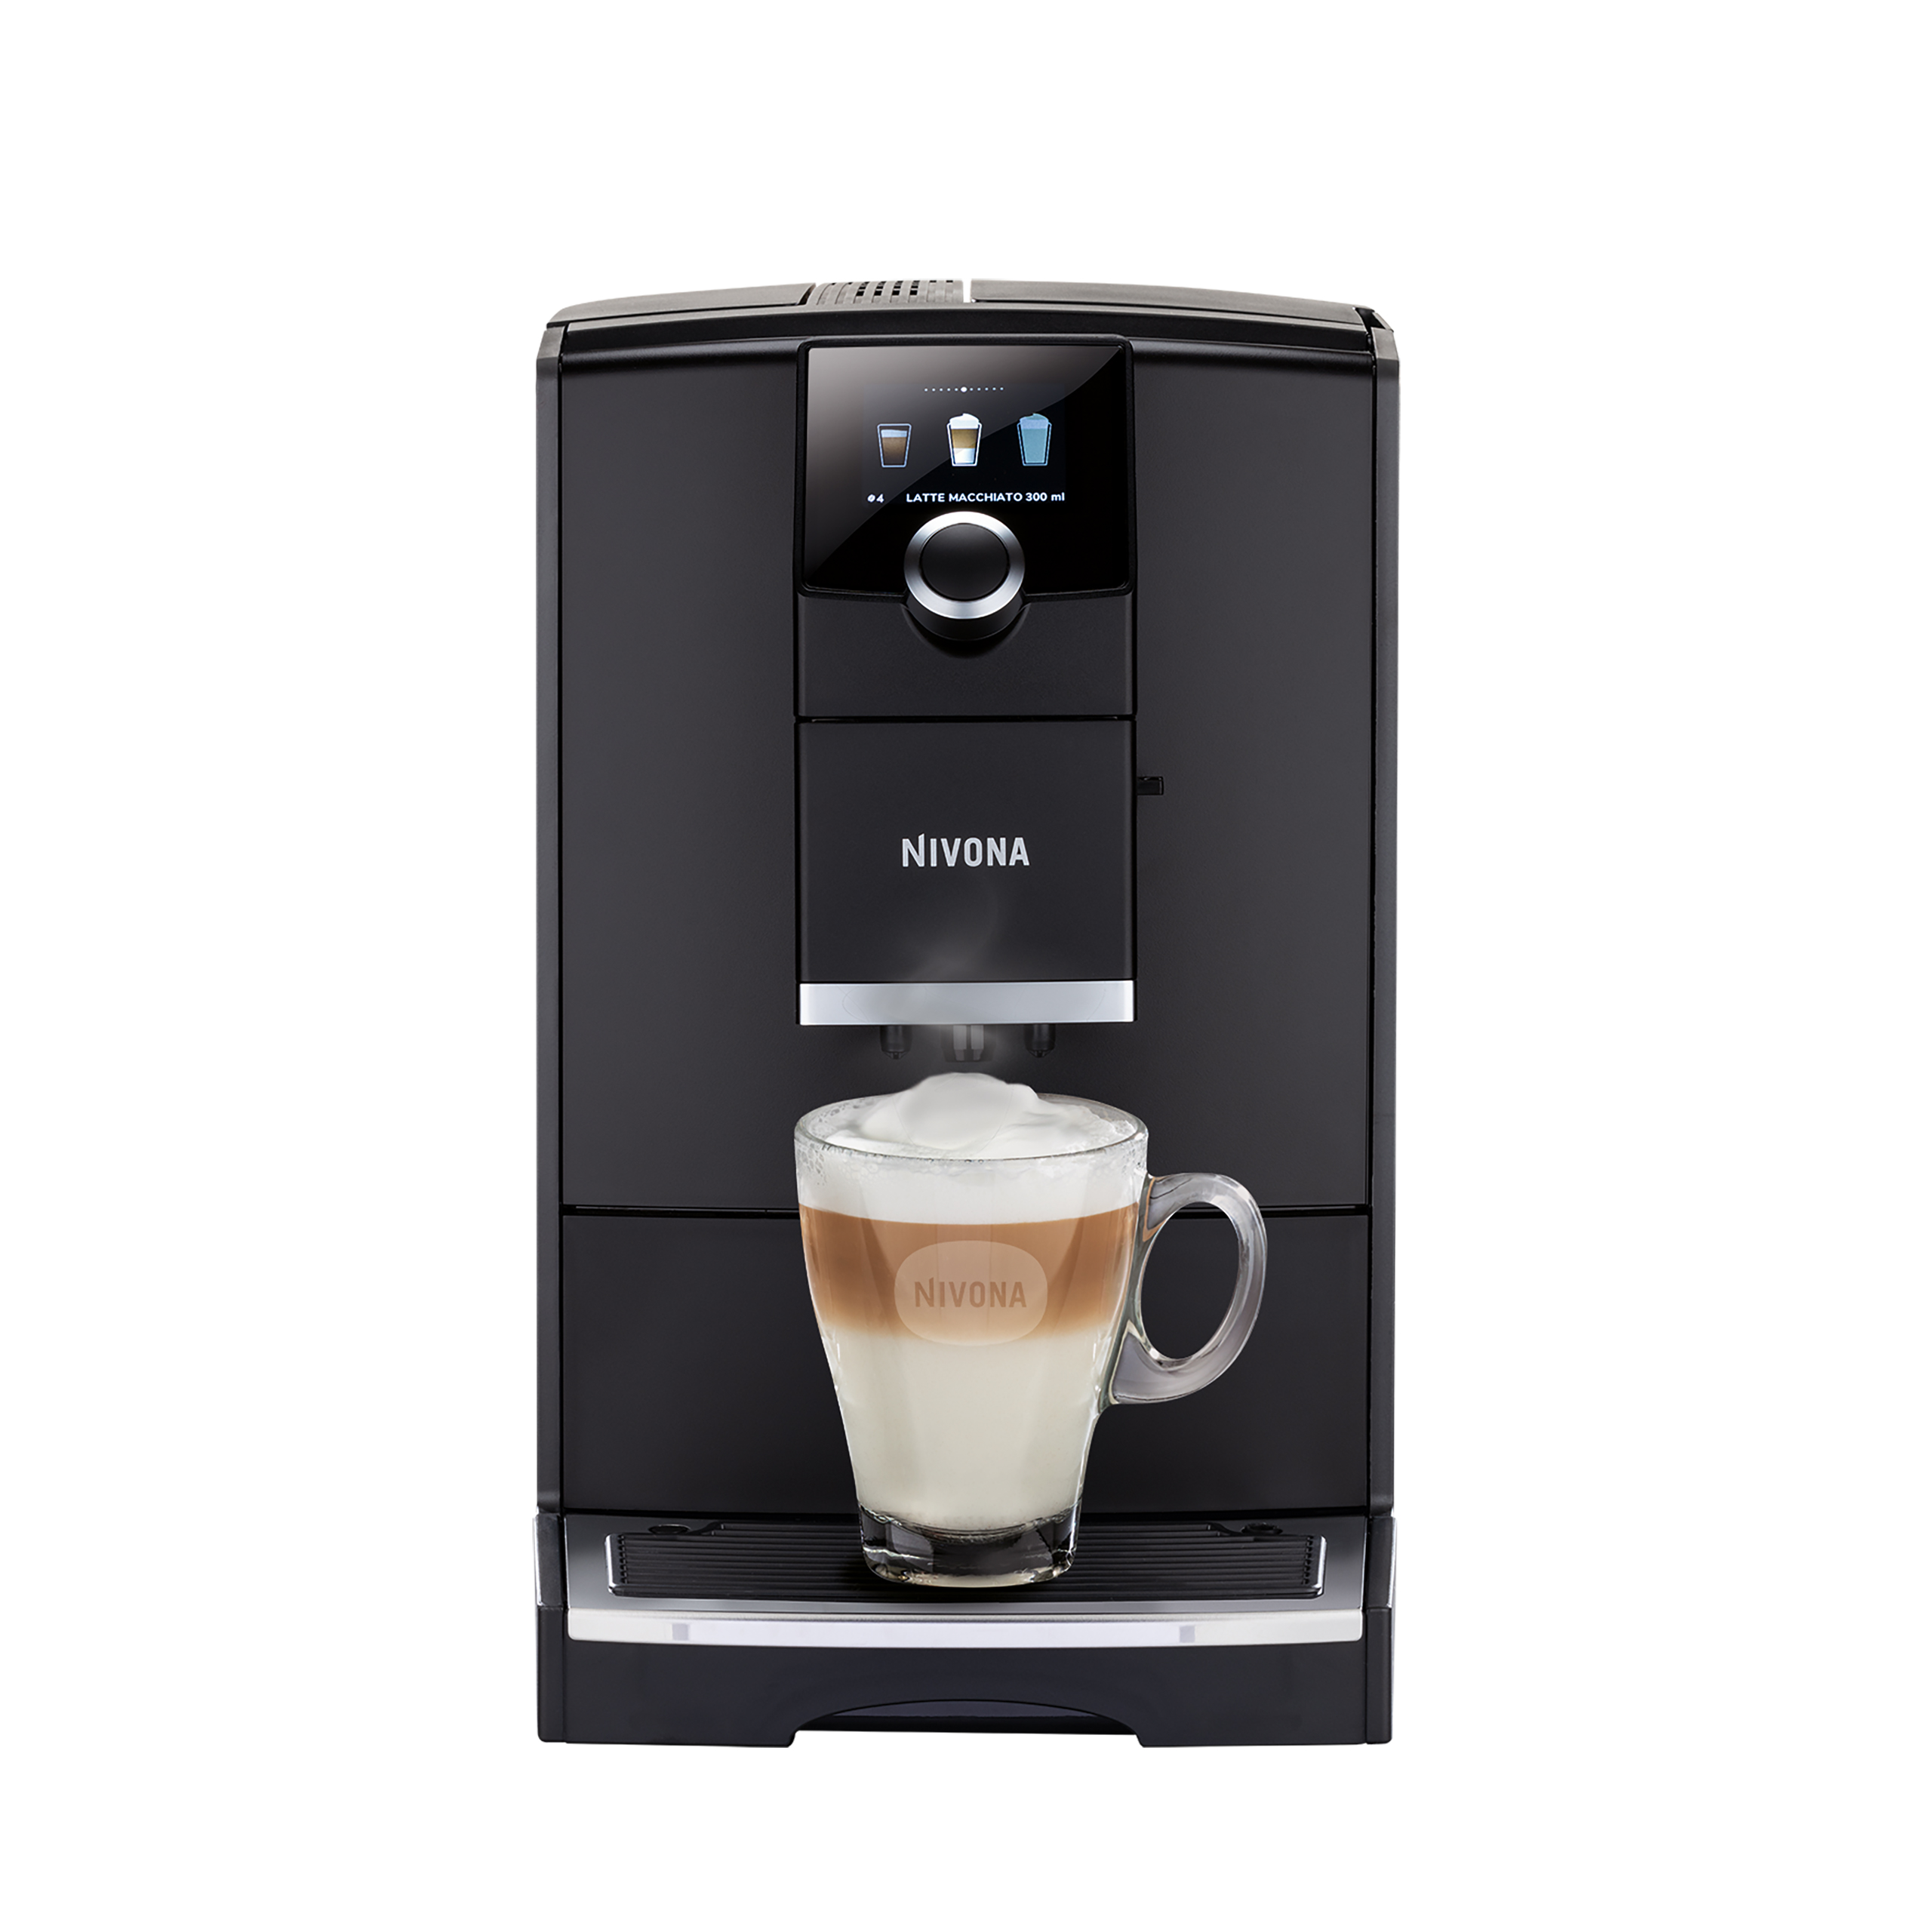 NICR 790 CafeRomatica fully automatic espresso machine